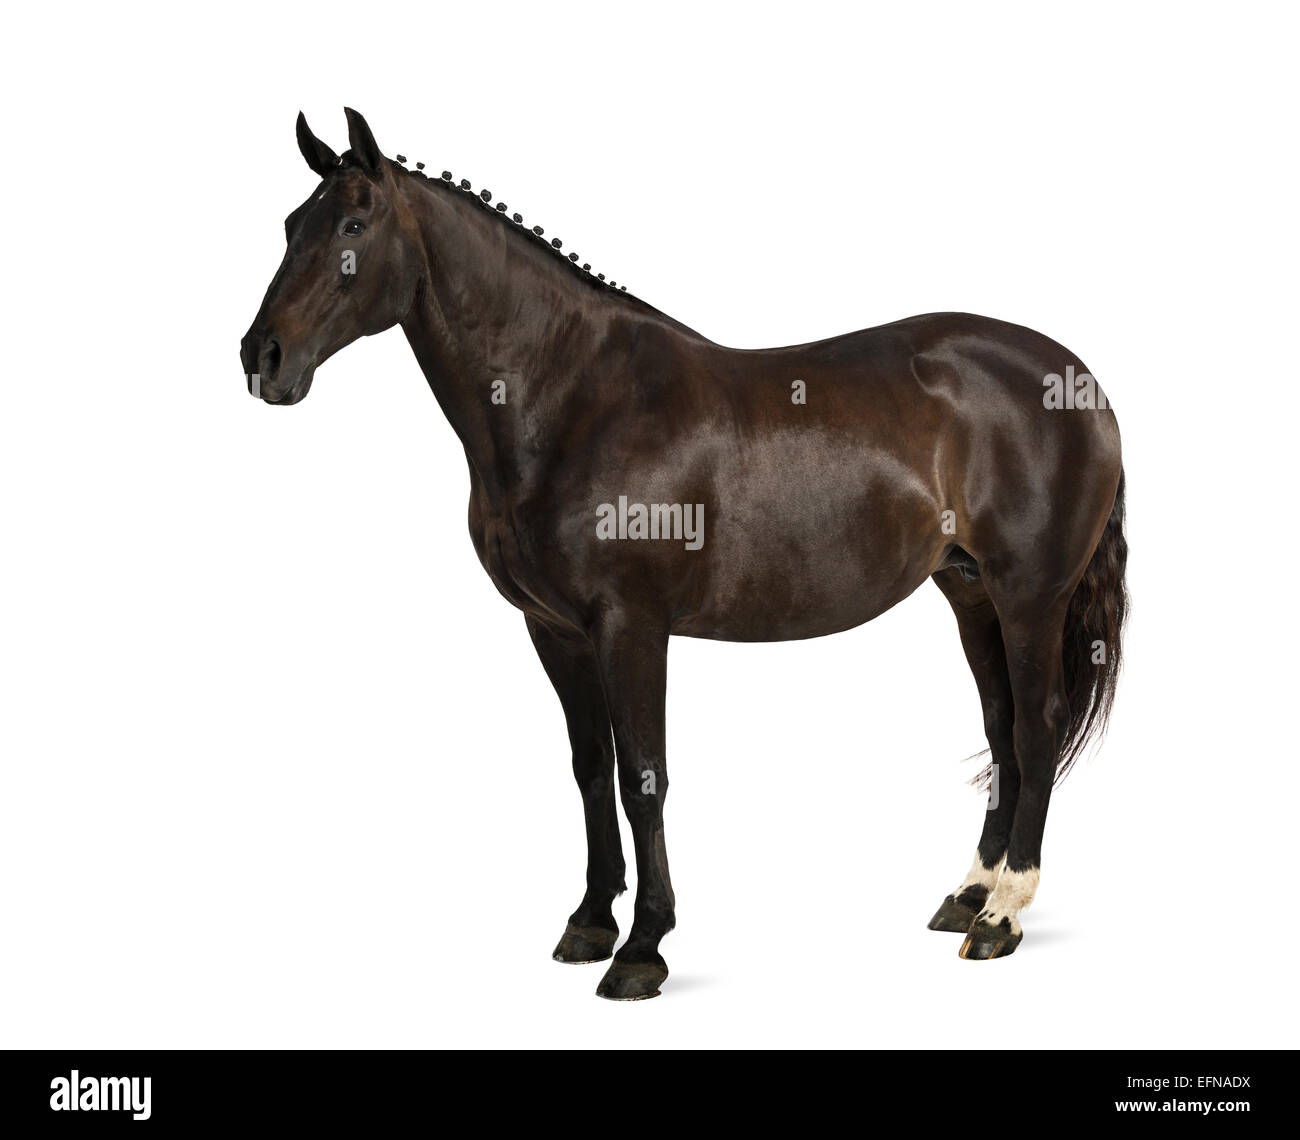 Cheval de Sport Belge (sBs) 25 ans, Equus ferus caballus, against white background Banque D'Images